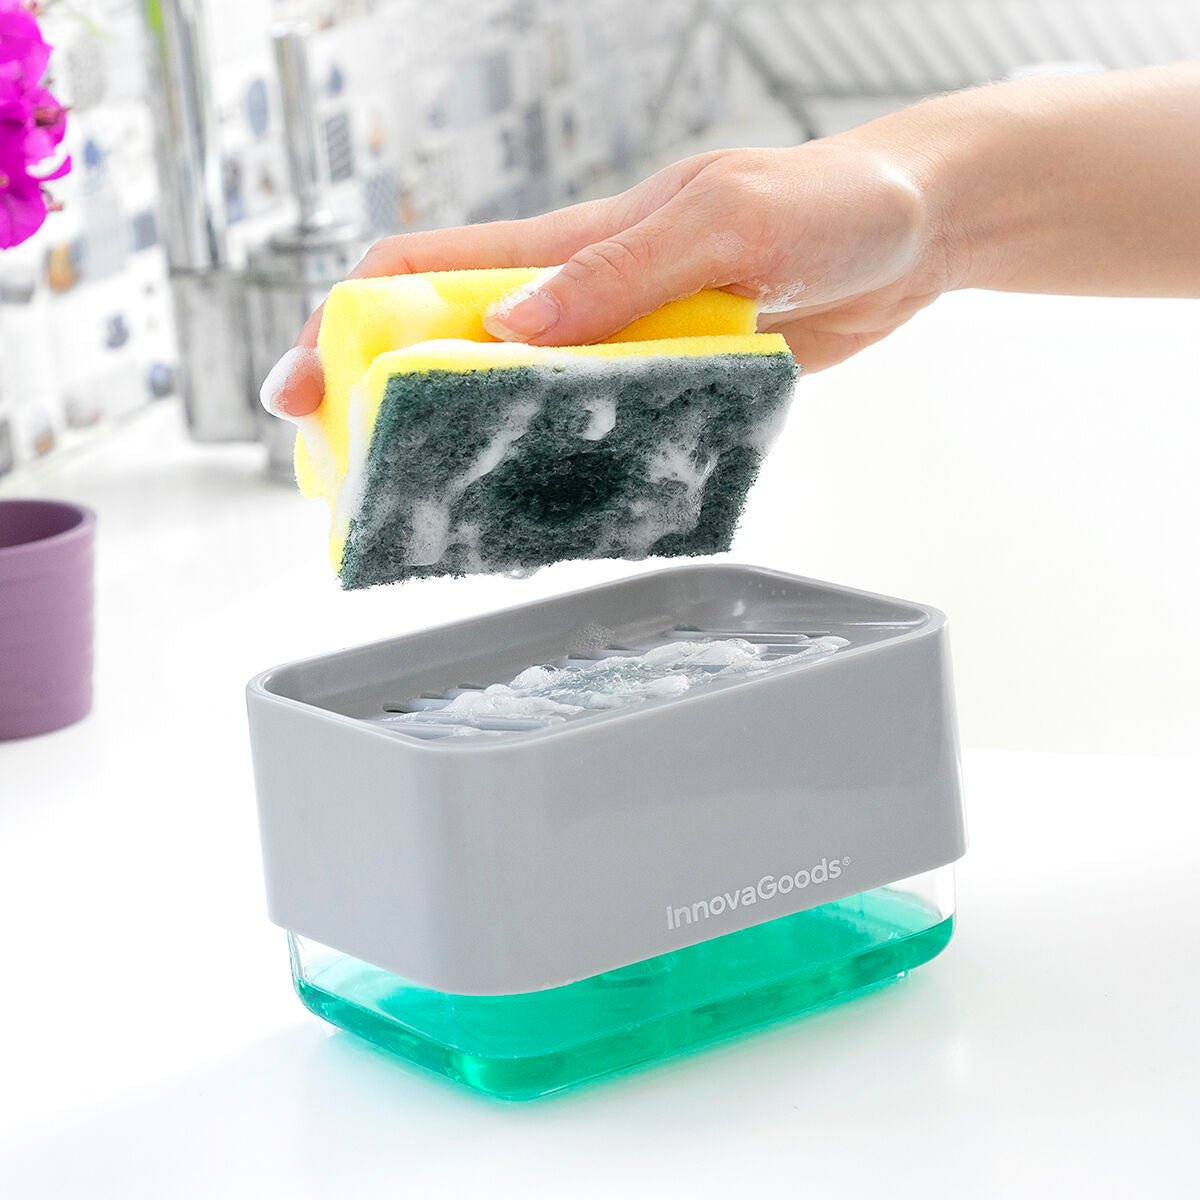 Dispensador de detergente 2 em 1 para lava-louça Pushoap InnovaGoods